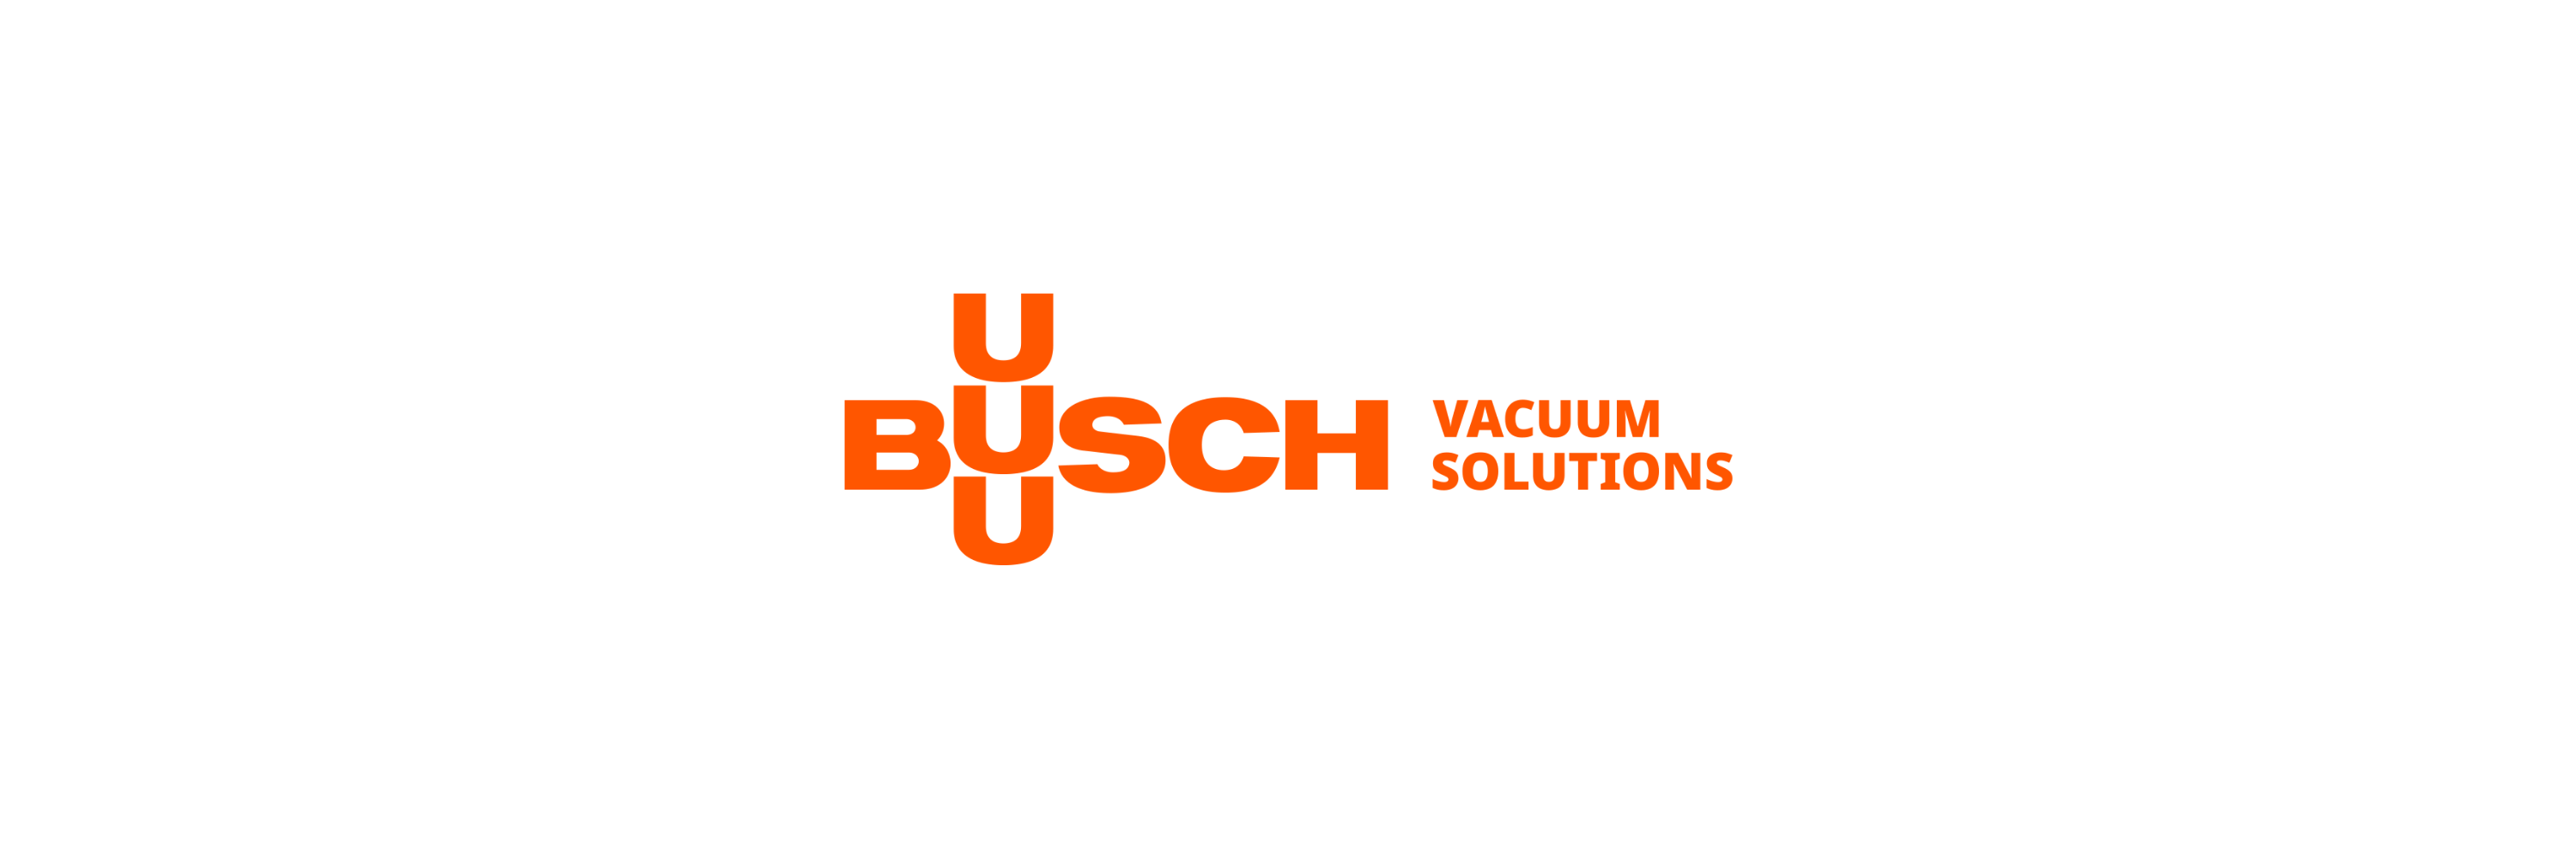 Busch - Klenk Maschinenhandel